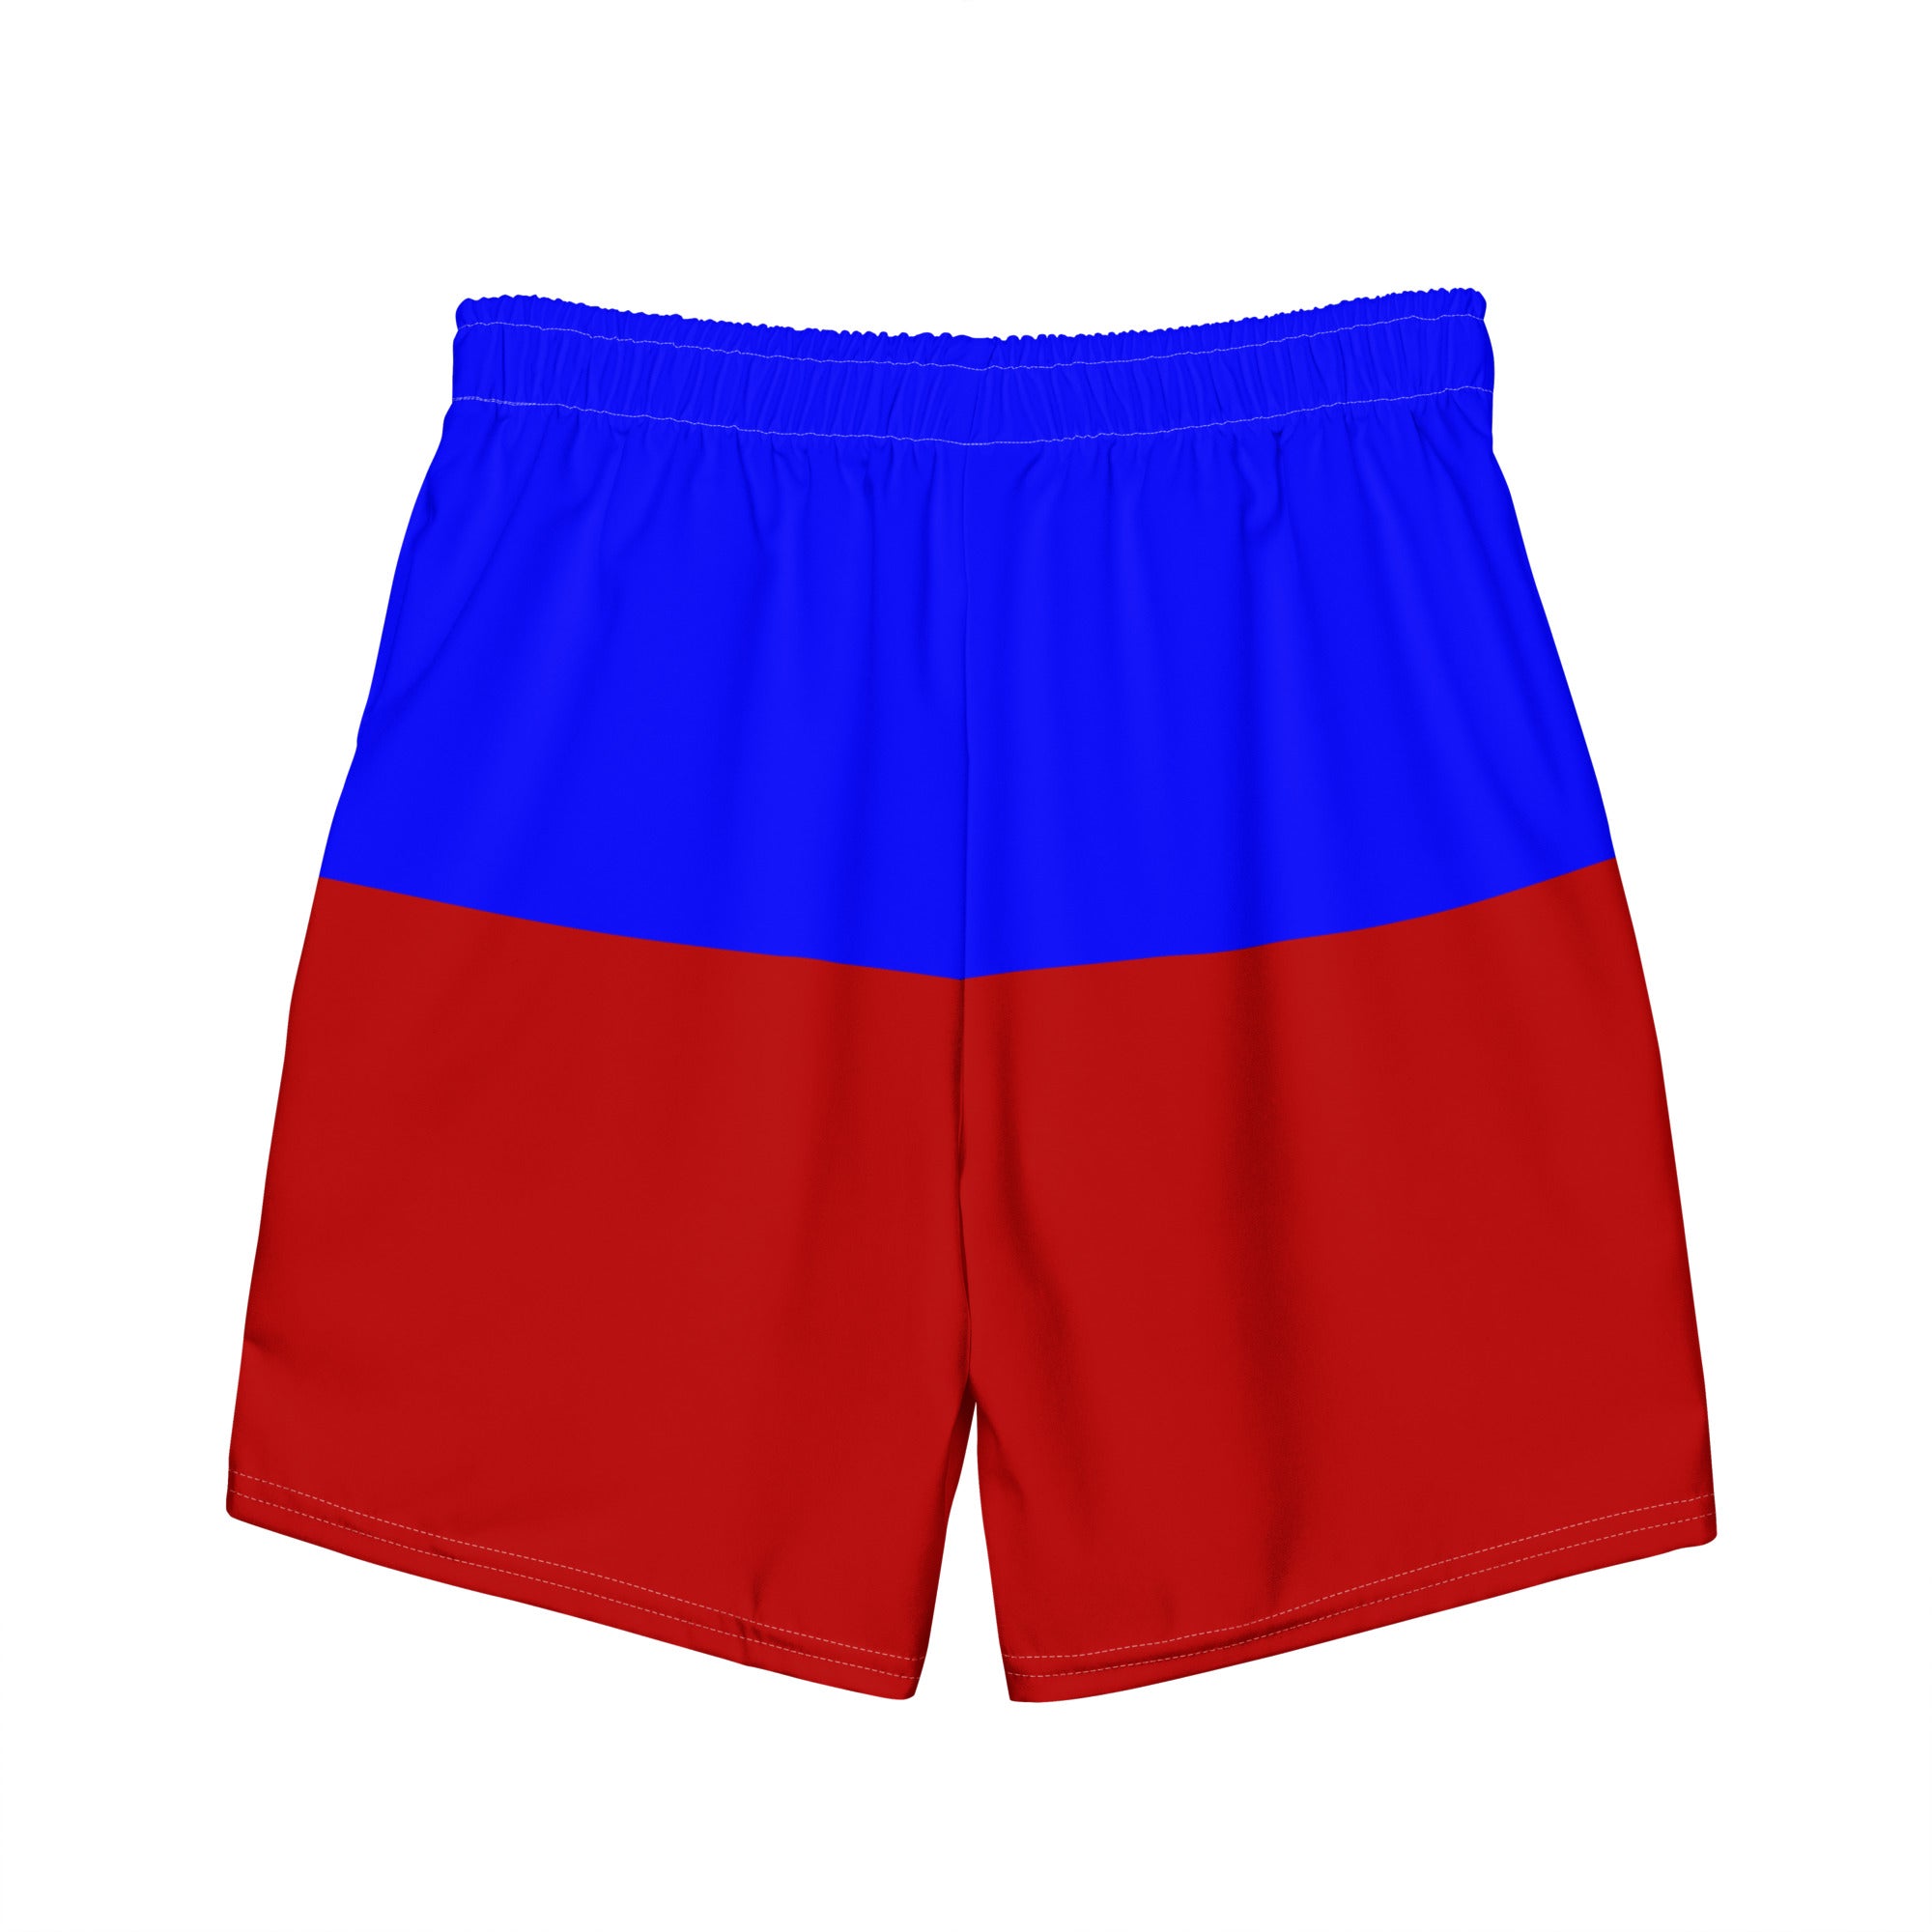 Haiti Flag - Men's swim trunks